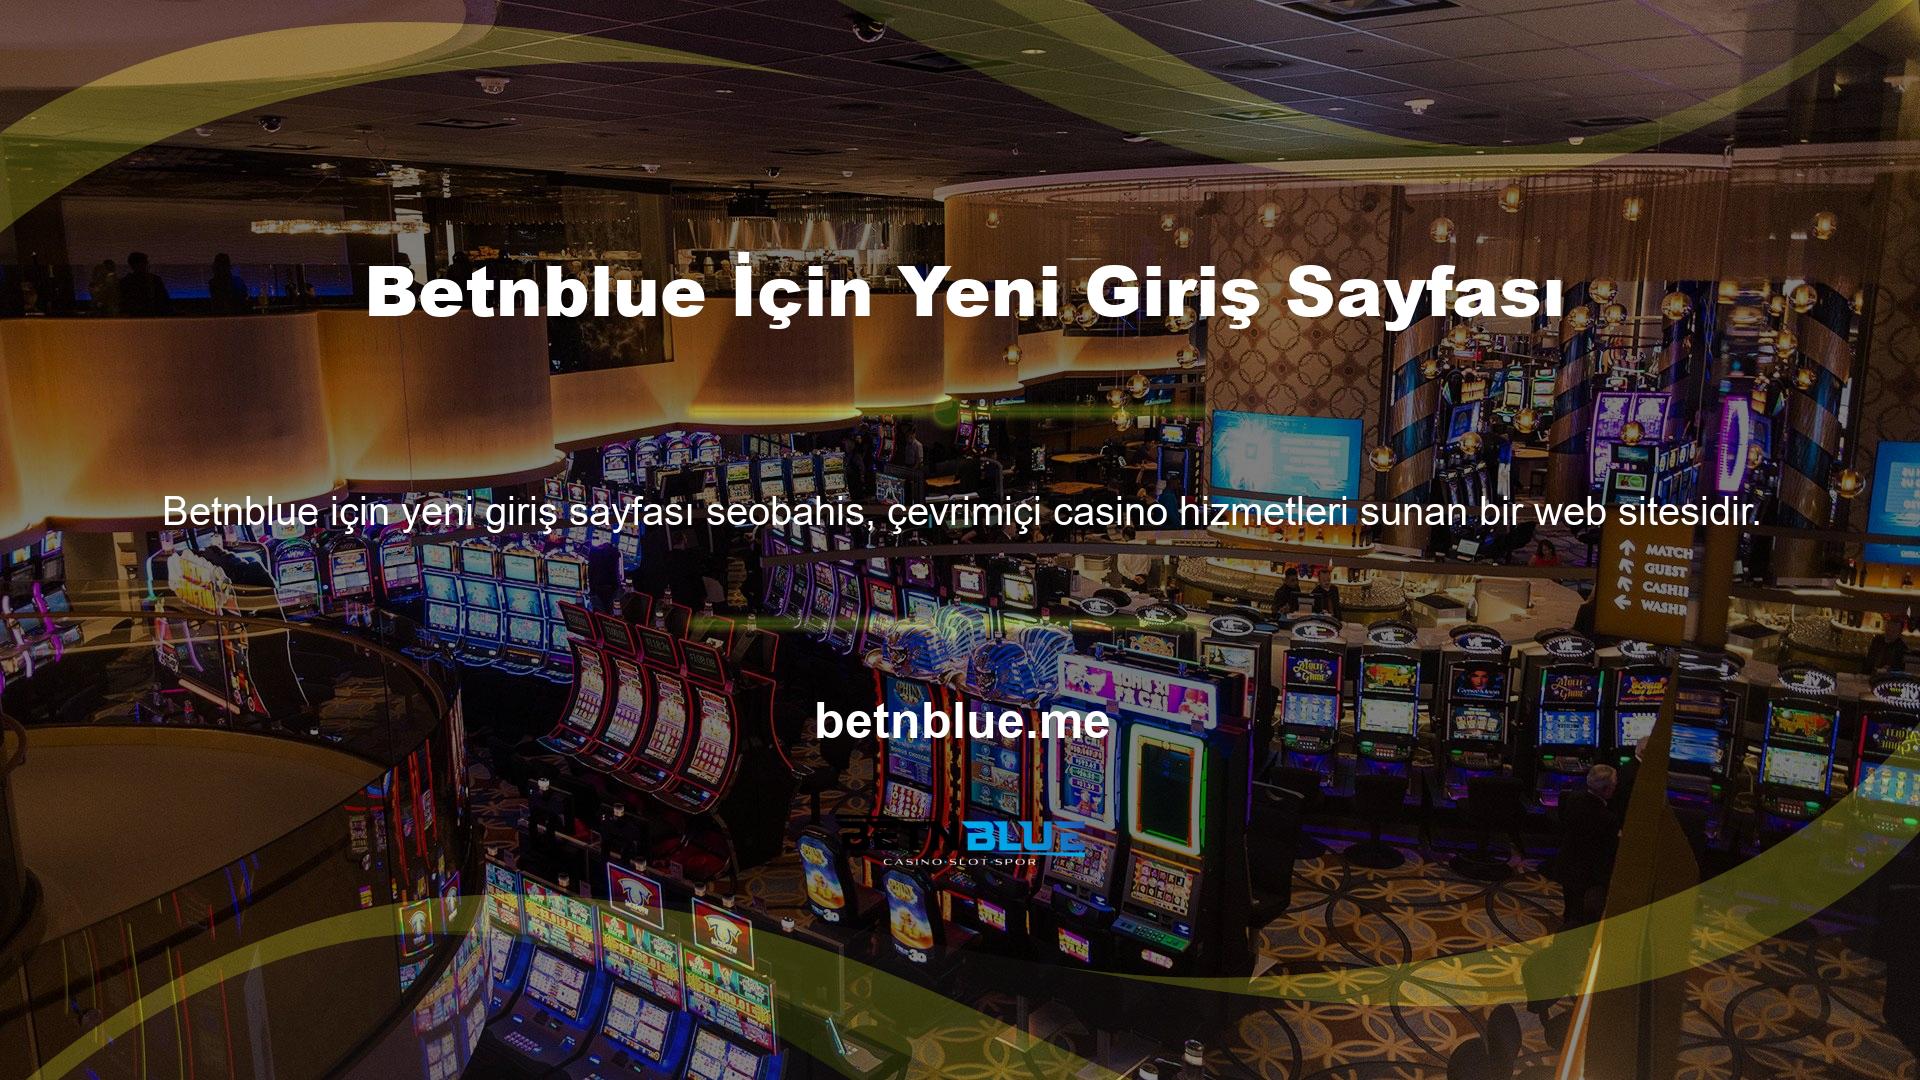 Betnblue, çevrimiçi casino hizmetleri sunan bir web sitesidir